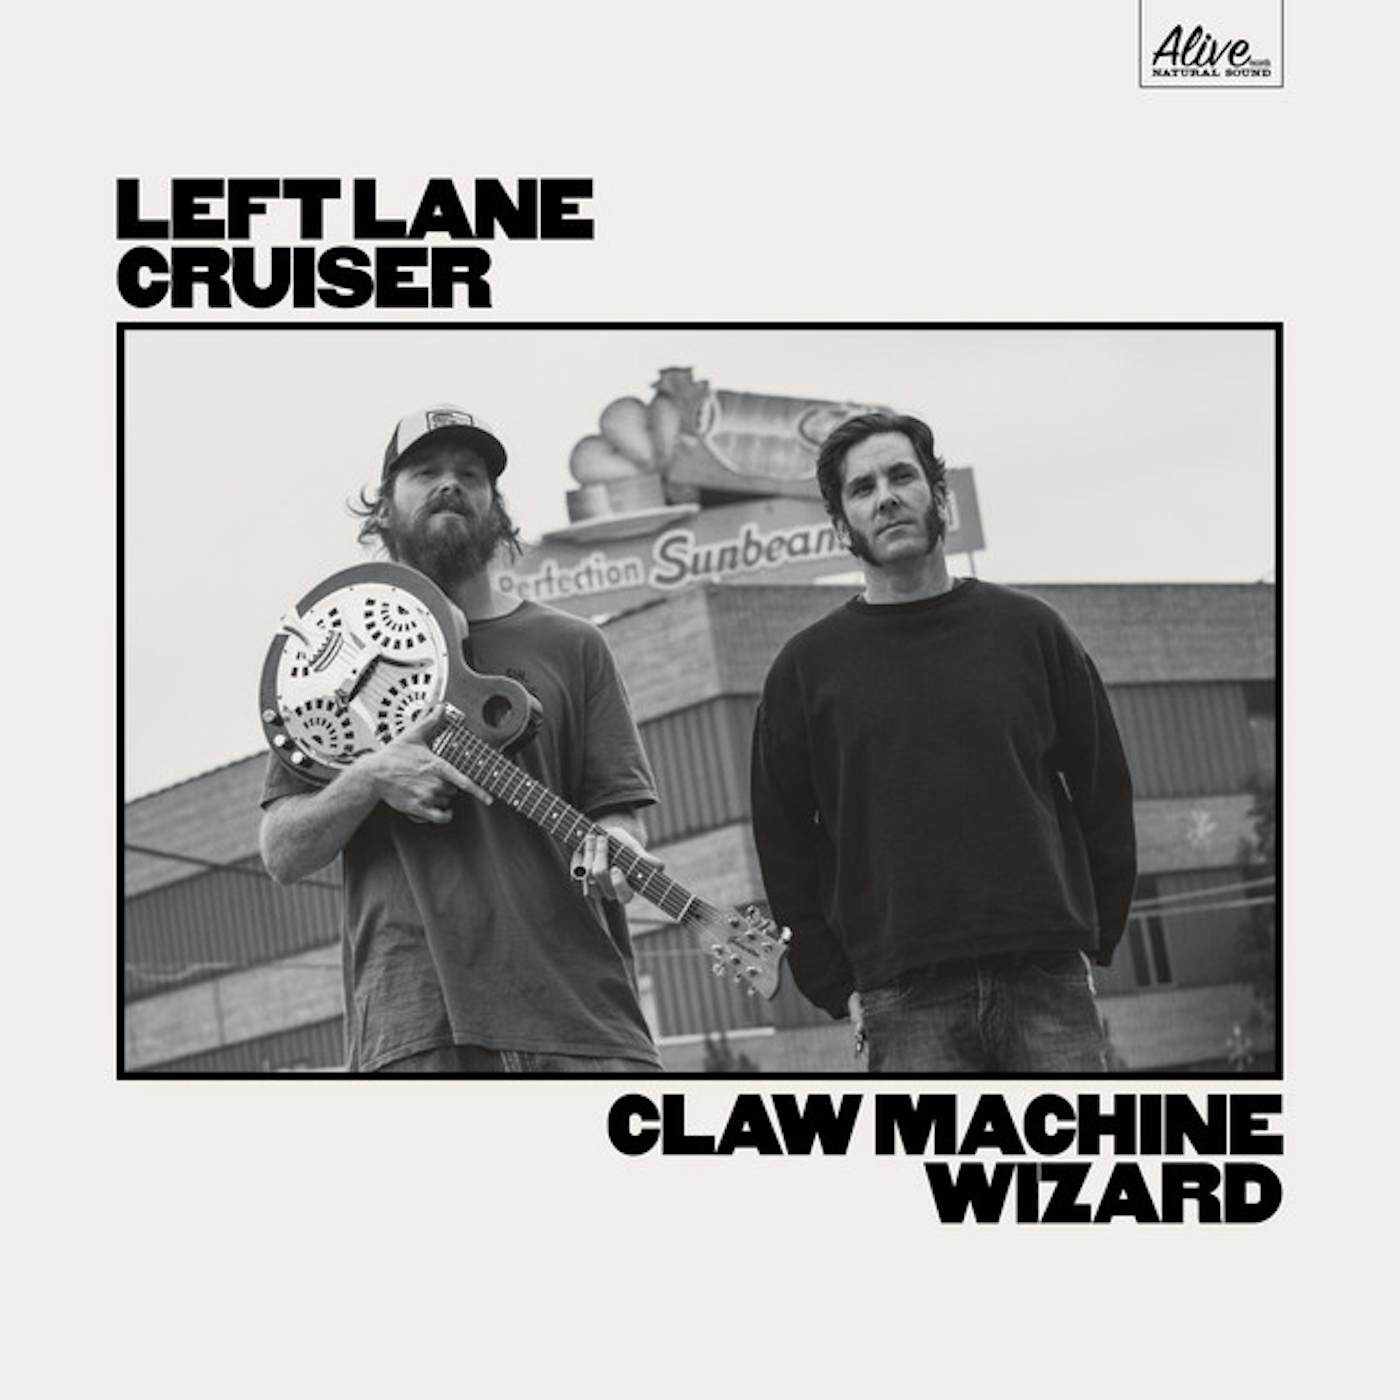 Left Lane Cruiser Claw Machine Wizard Vinyl Record